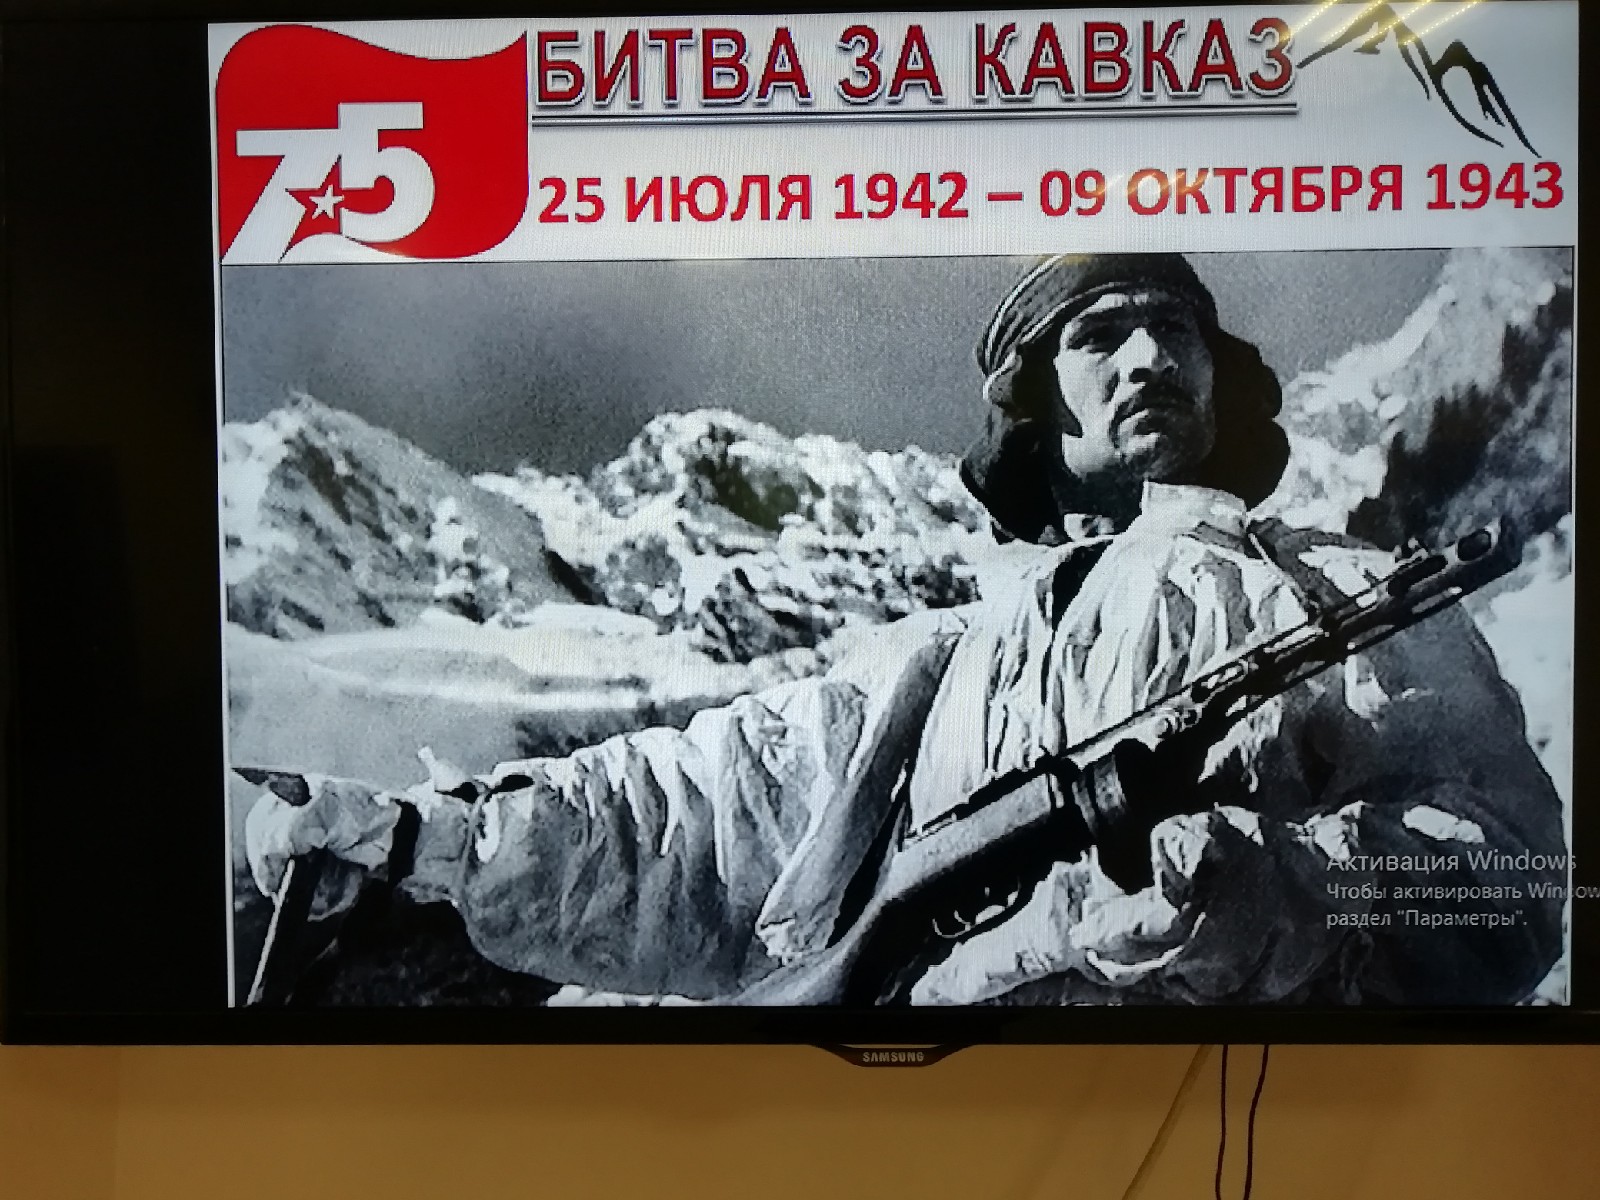 Битва за Кавказ 1943 картина